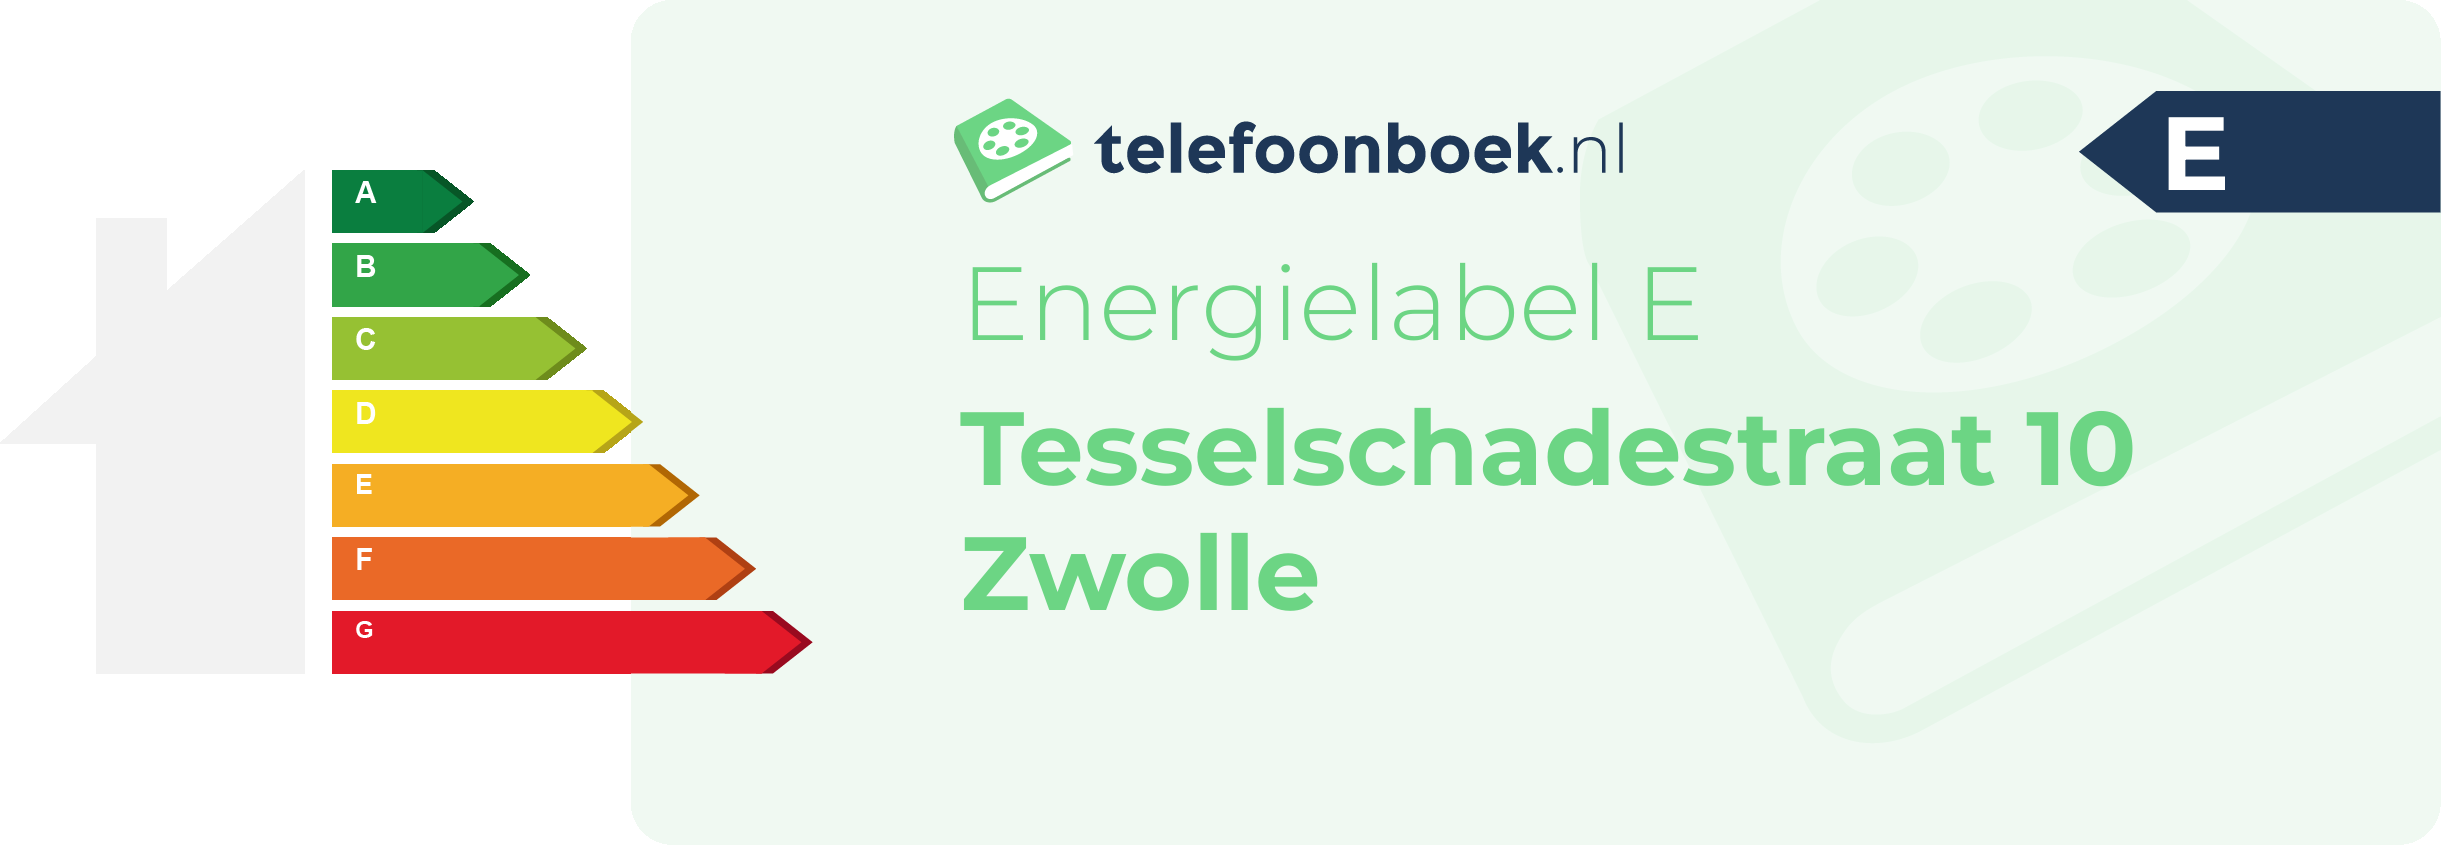 Energielabel Tesselschadestraat 10 Zwolle